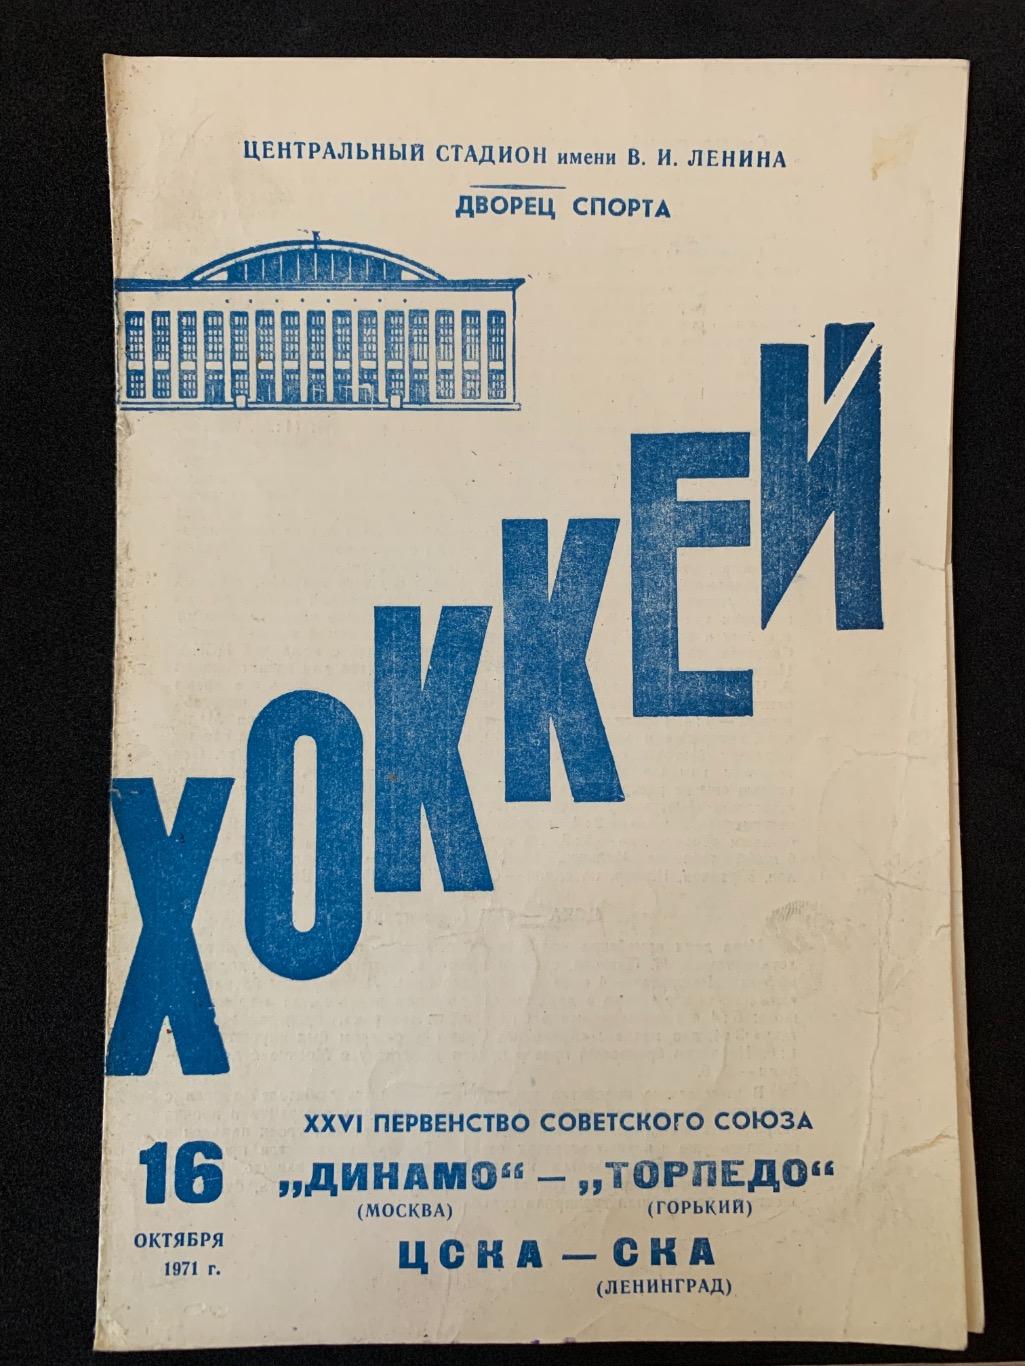 Динамо - Торпедо / ЦСКА - СКА 16.10.1971